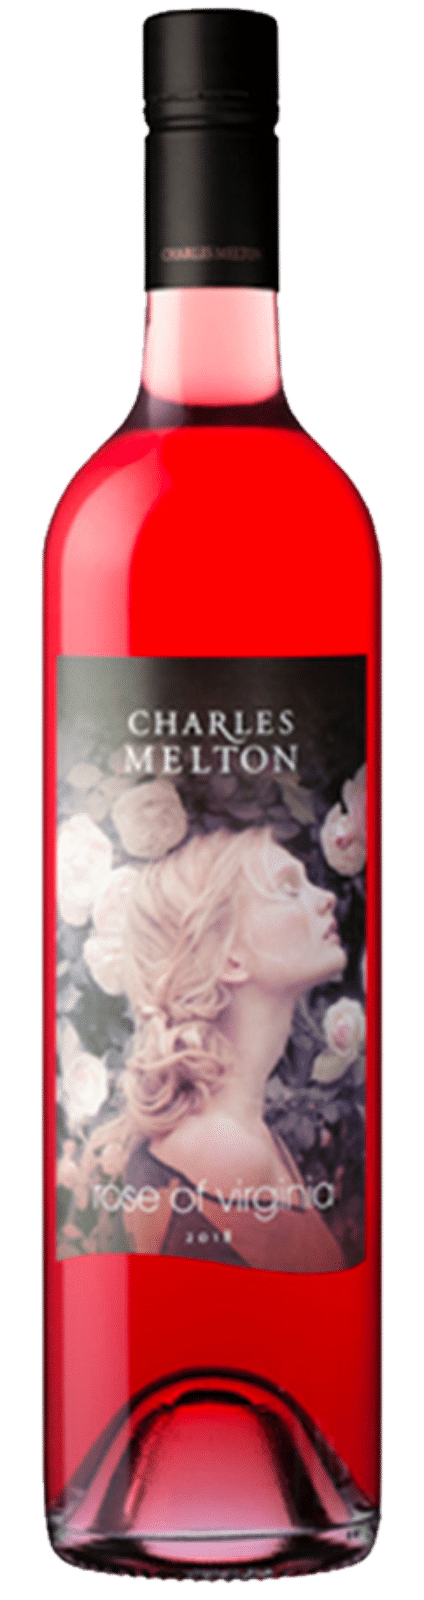 Charles Melton - Rose of Virginia 2019